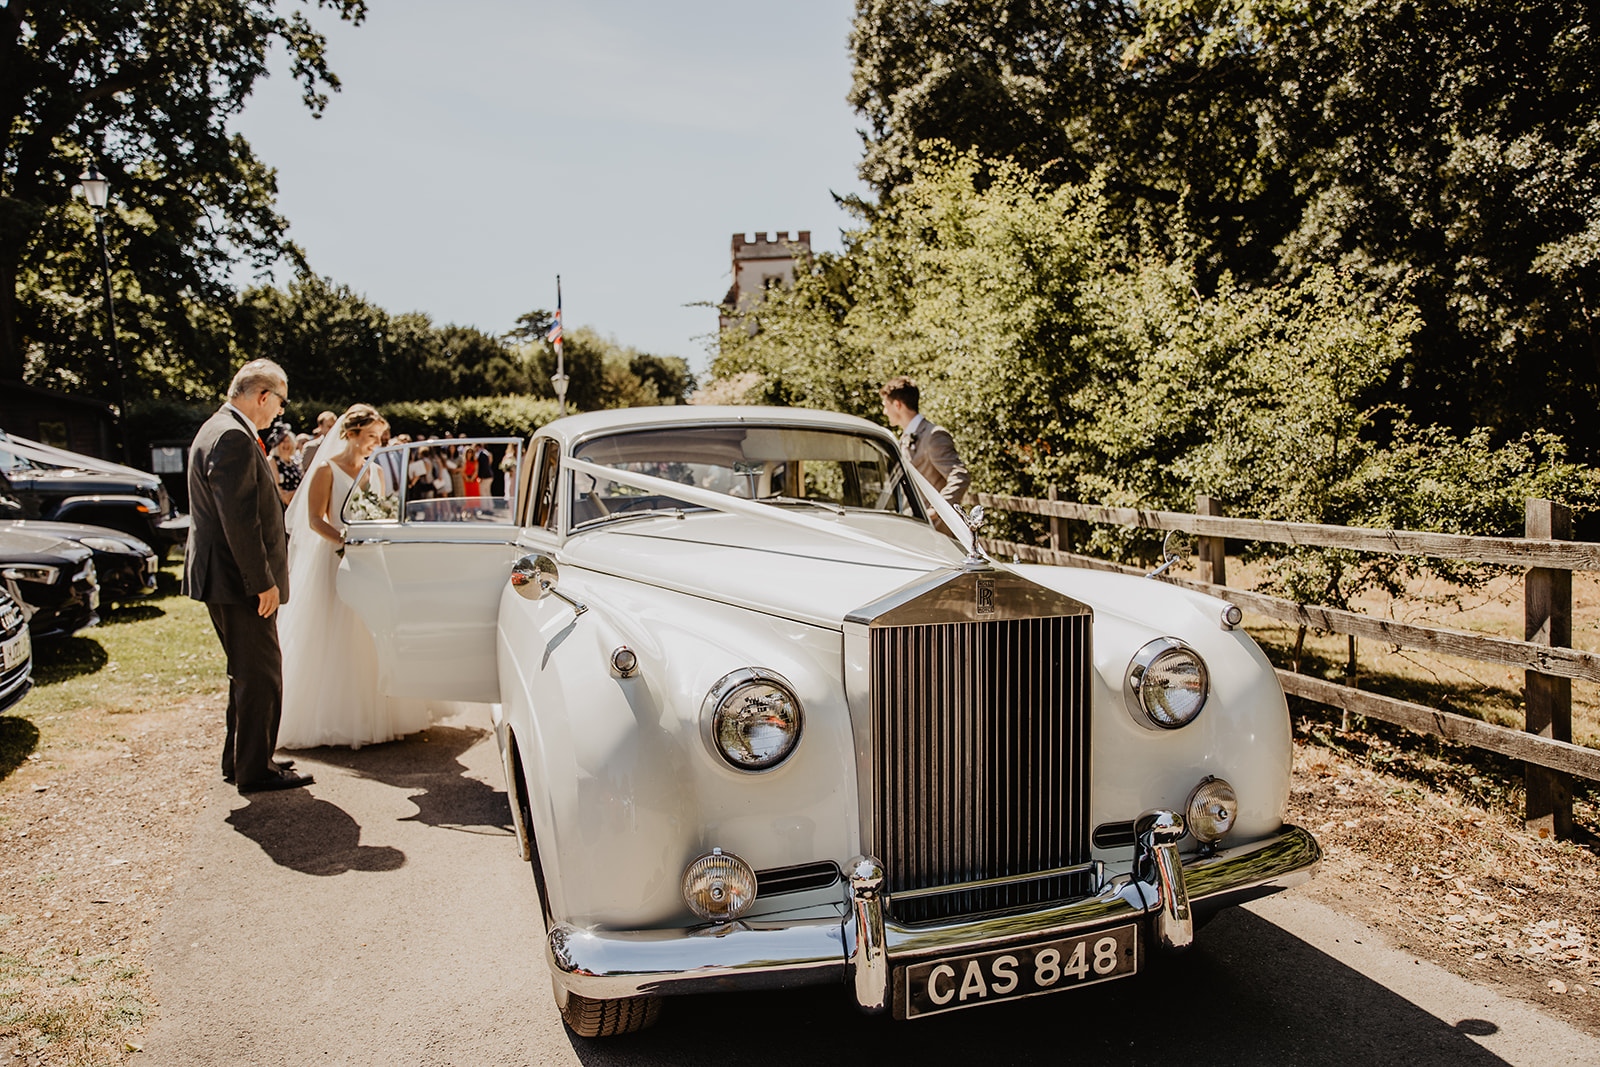 Wedding car at an RHS Gardens Wisley Wedding. By Olive Joy Photography